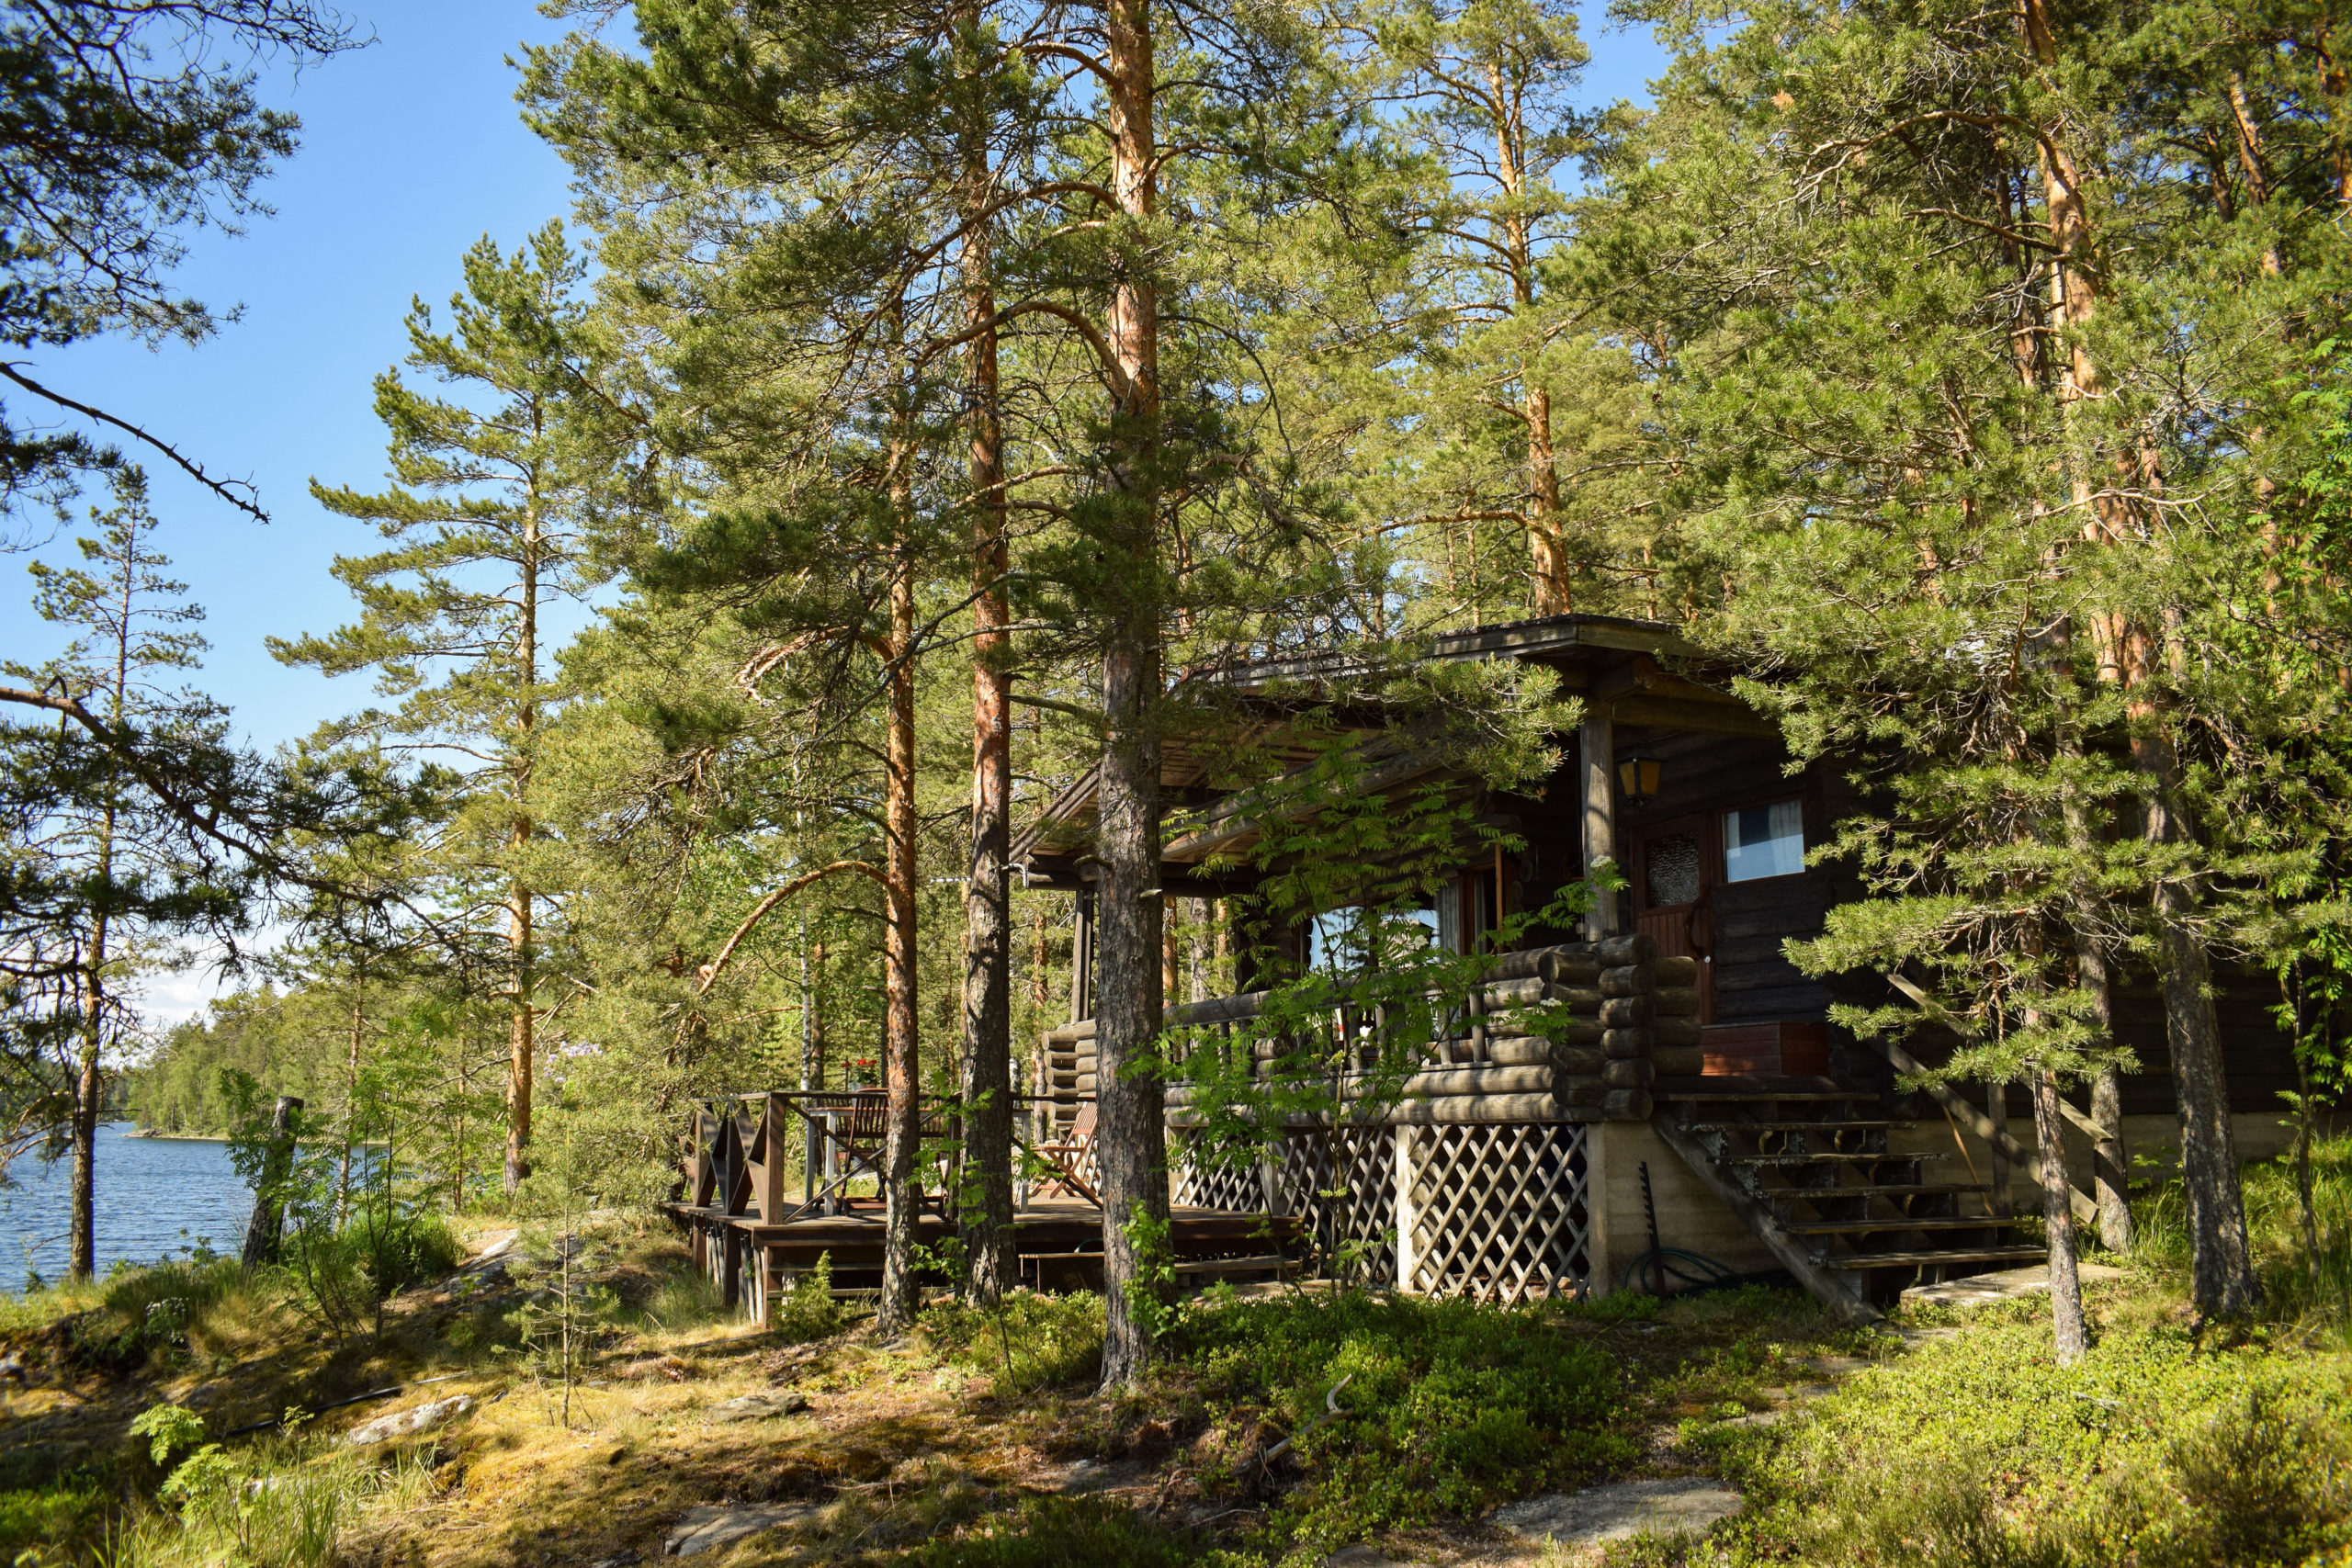 Kukkoniemen Lomamökit traditional Finnish rental cottages in Punkaharju, Saimaa